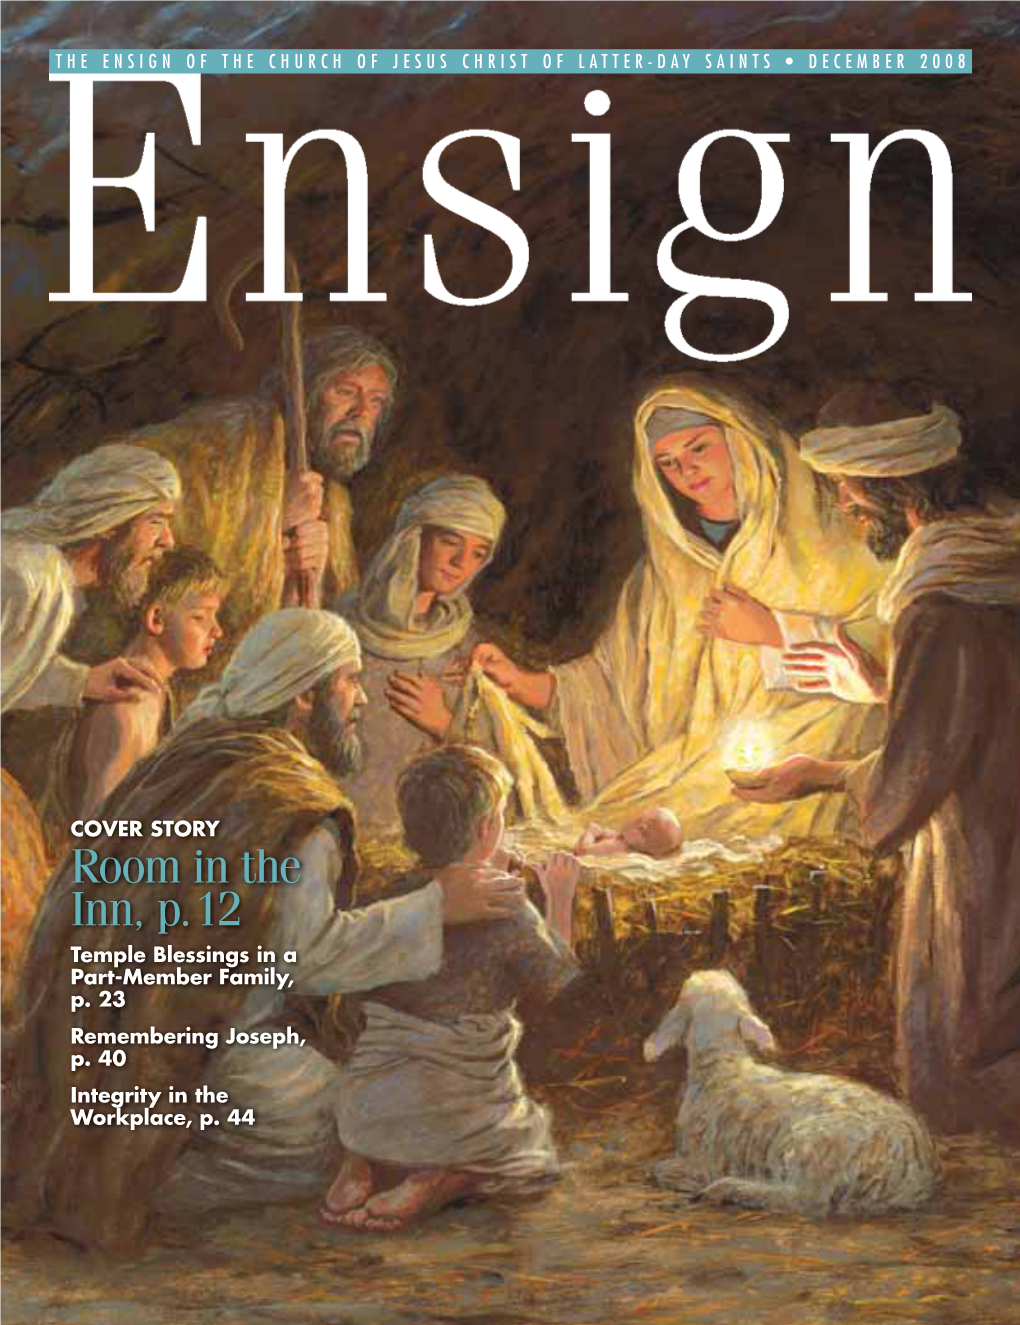 December 2008 Ensign